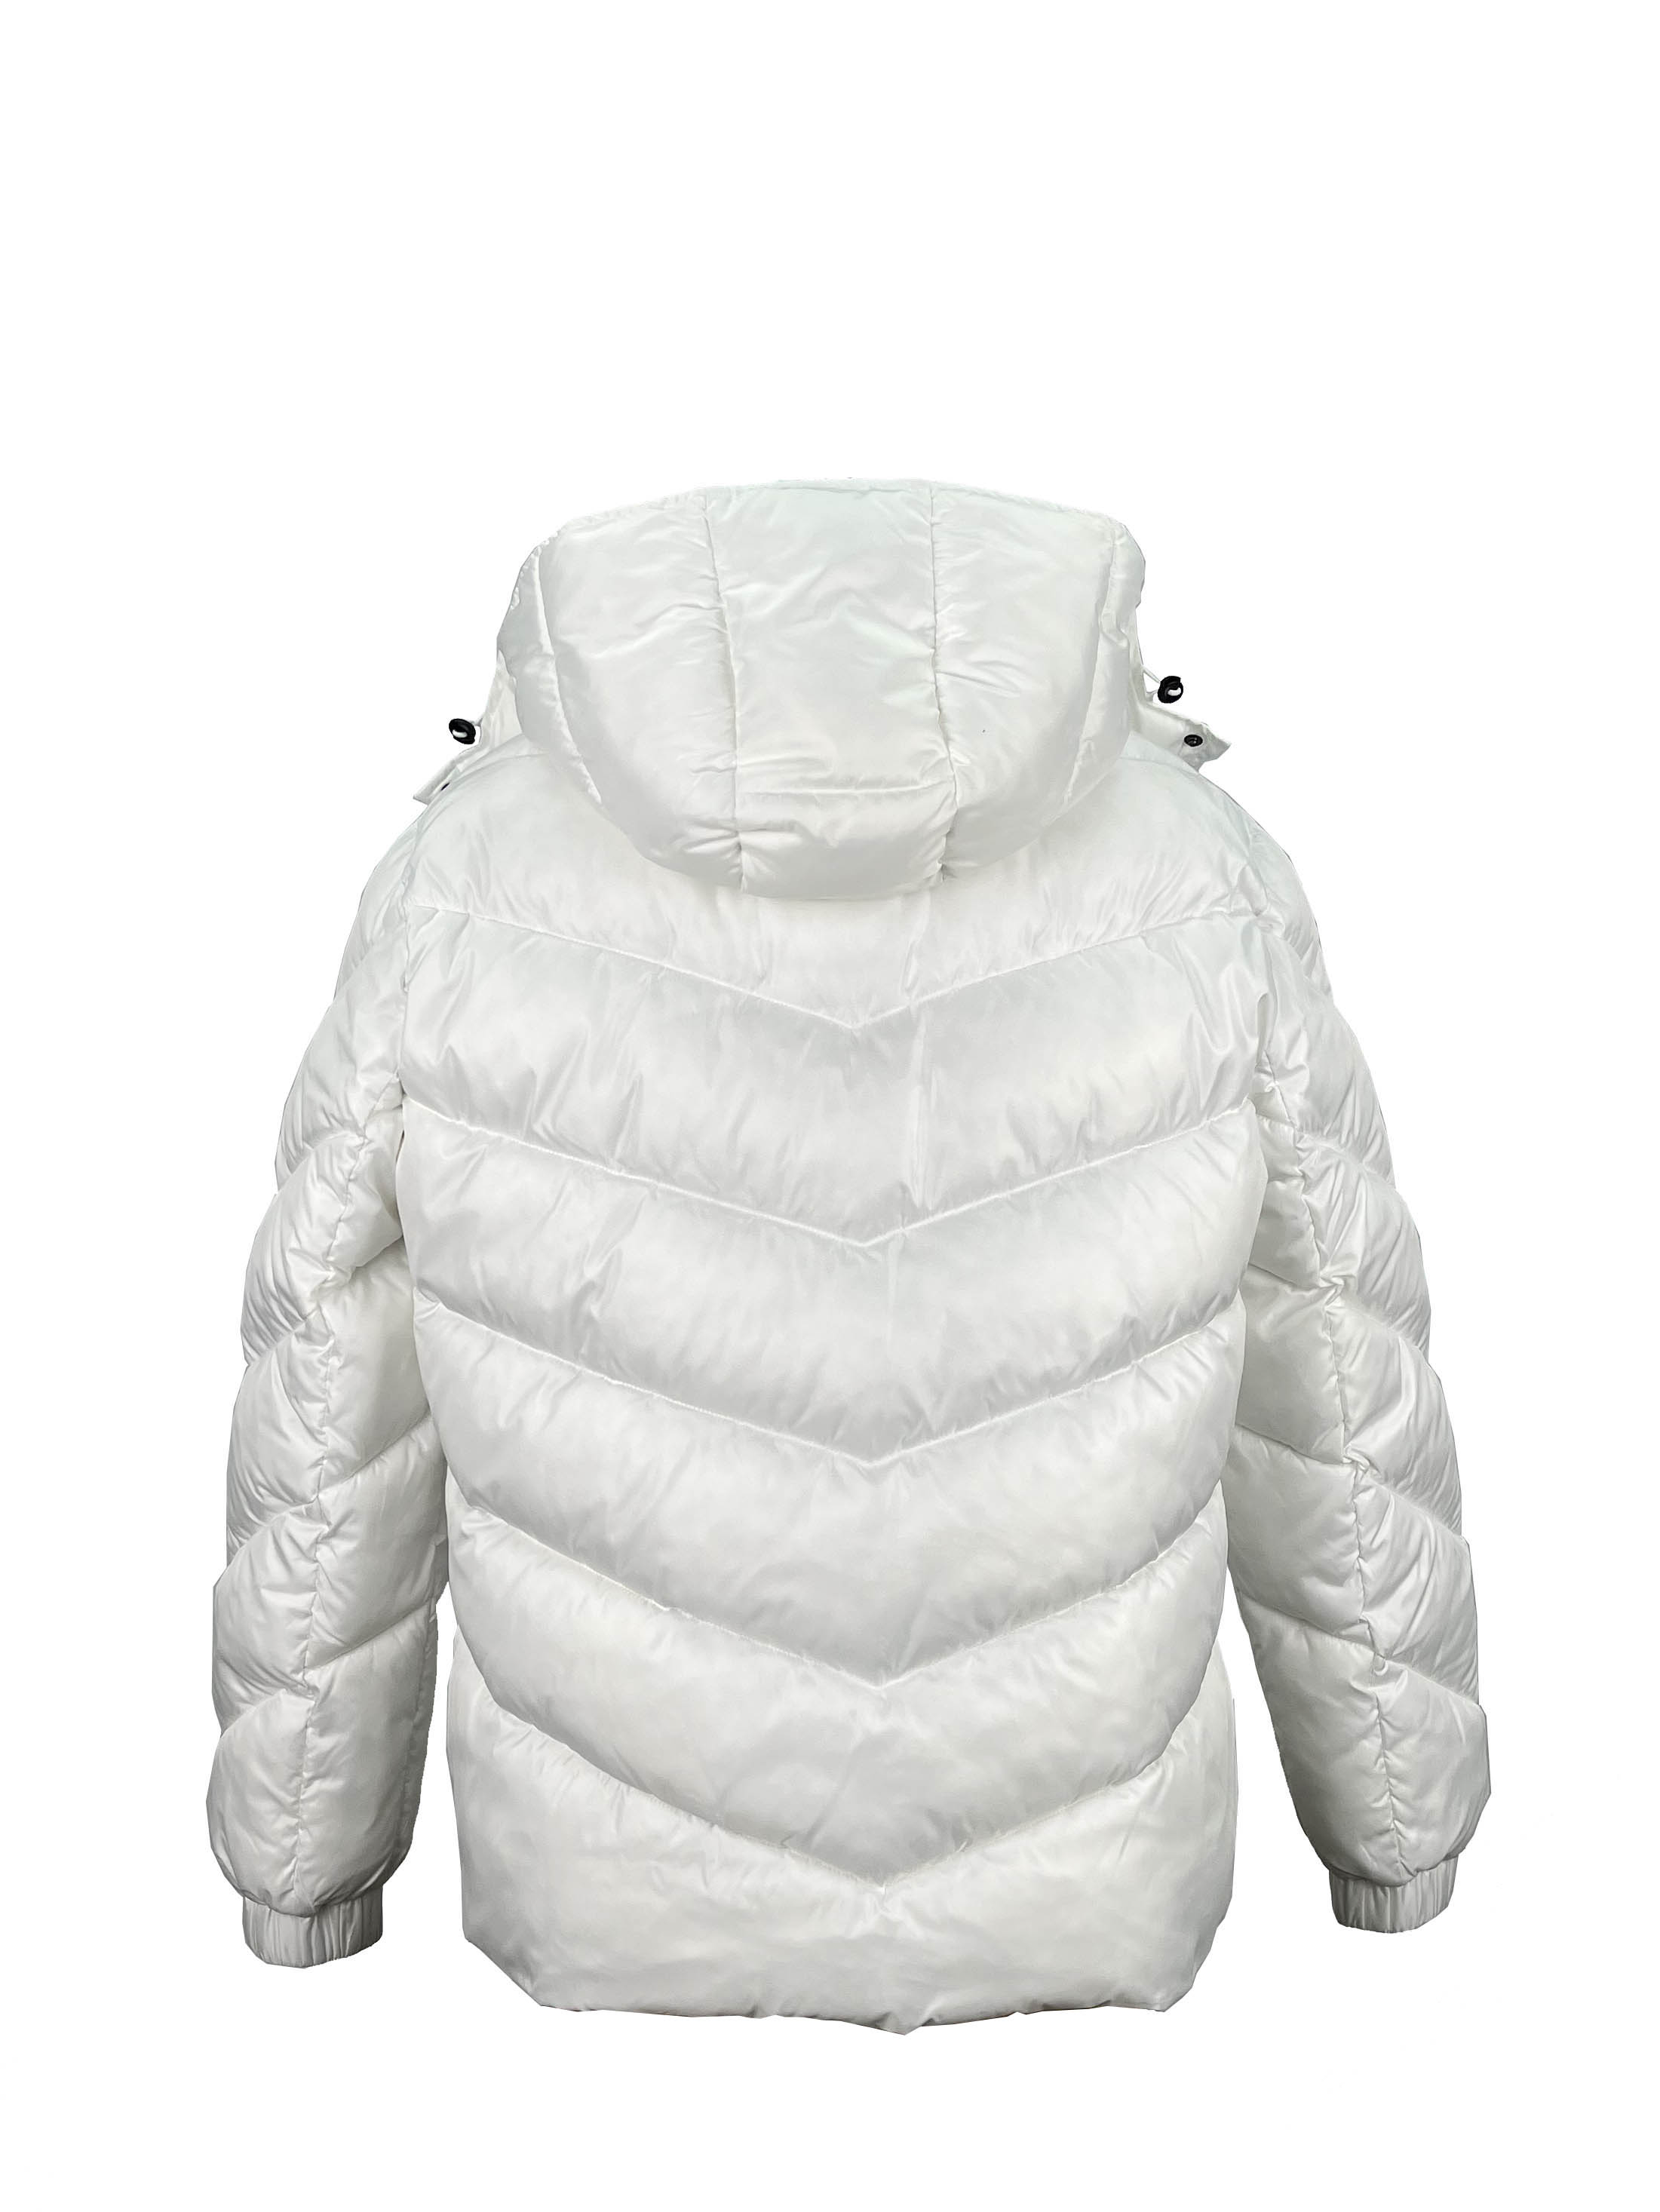 11.padded jacket (3)